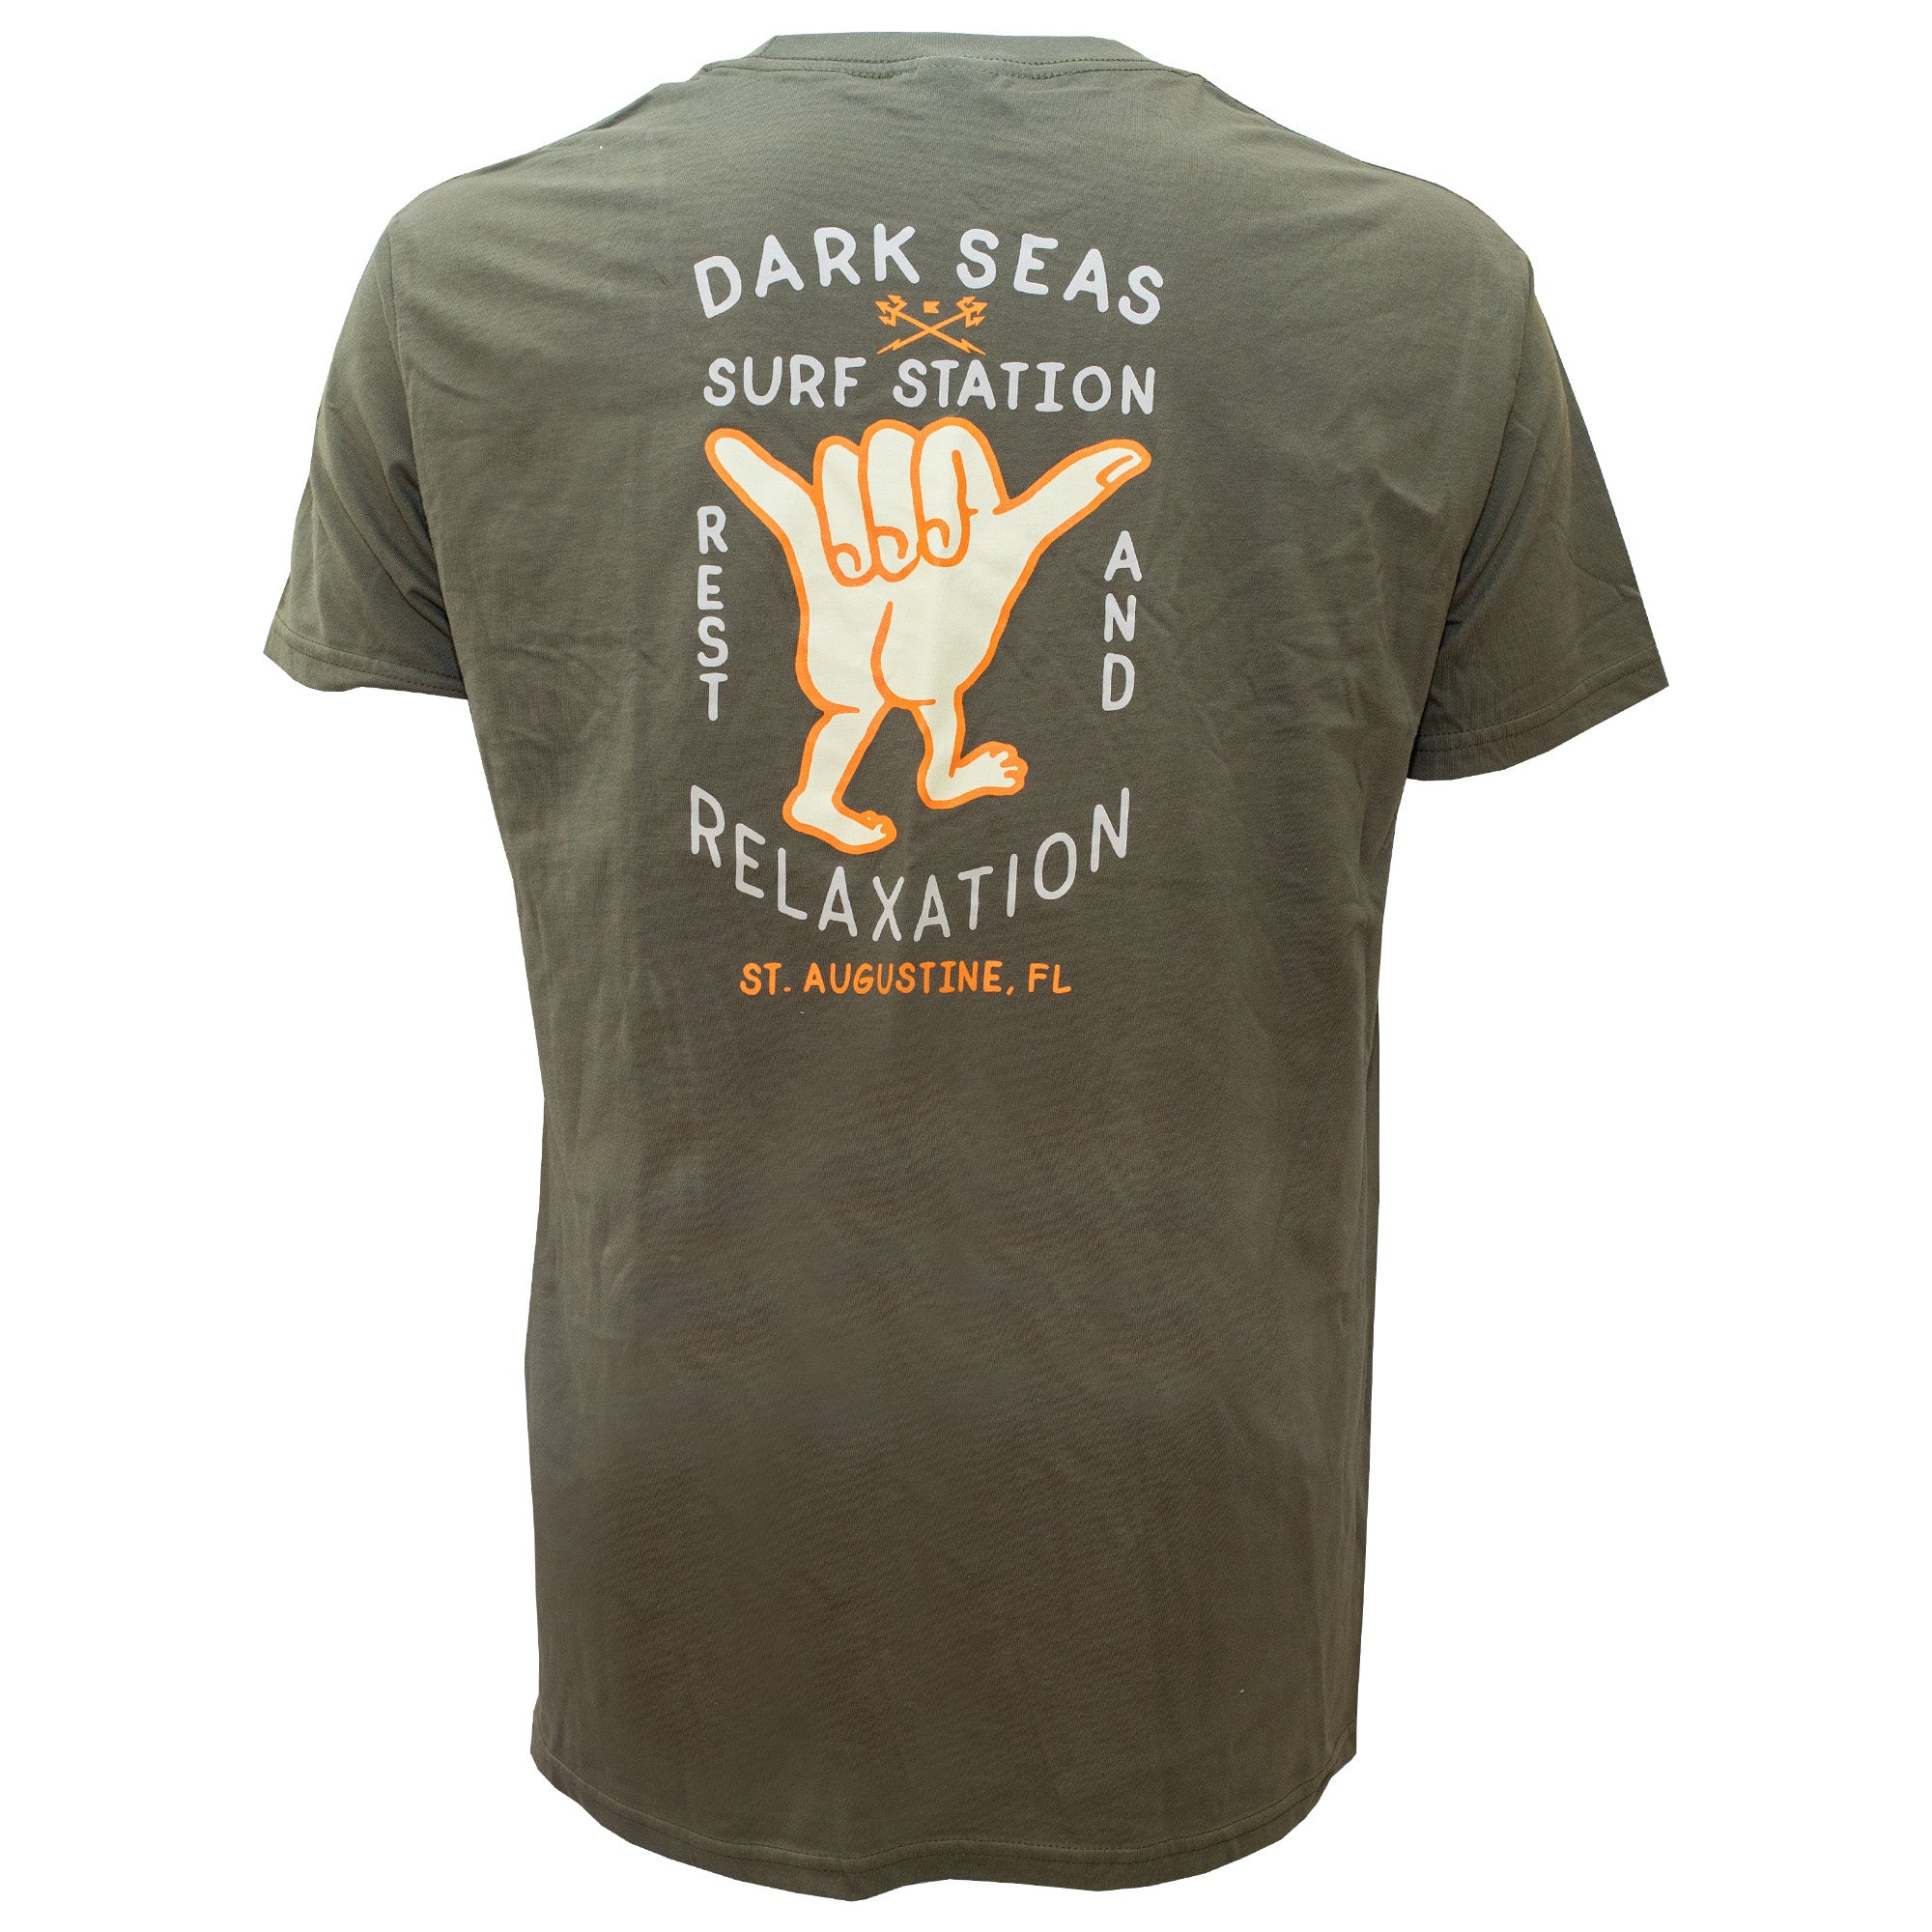 Surf Station x Dark Seas Hand Signals Men's S/S T-Shirt